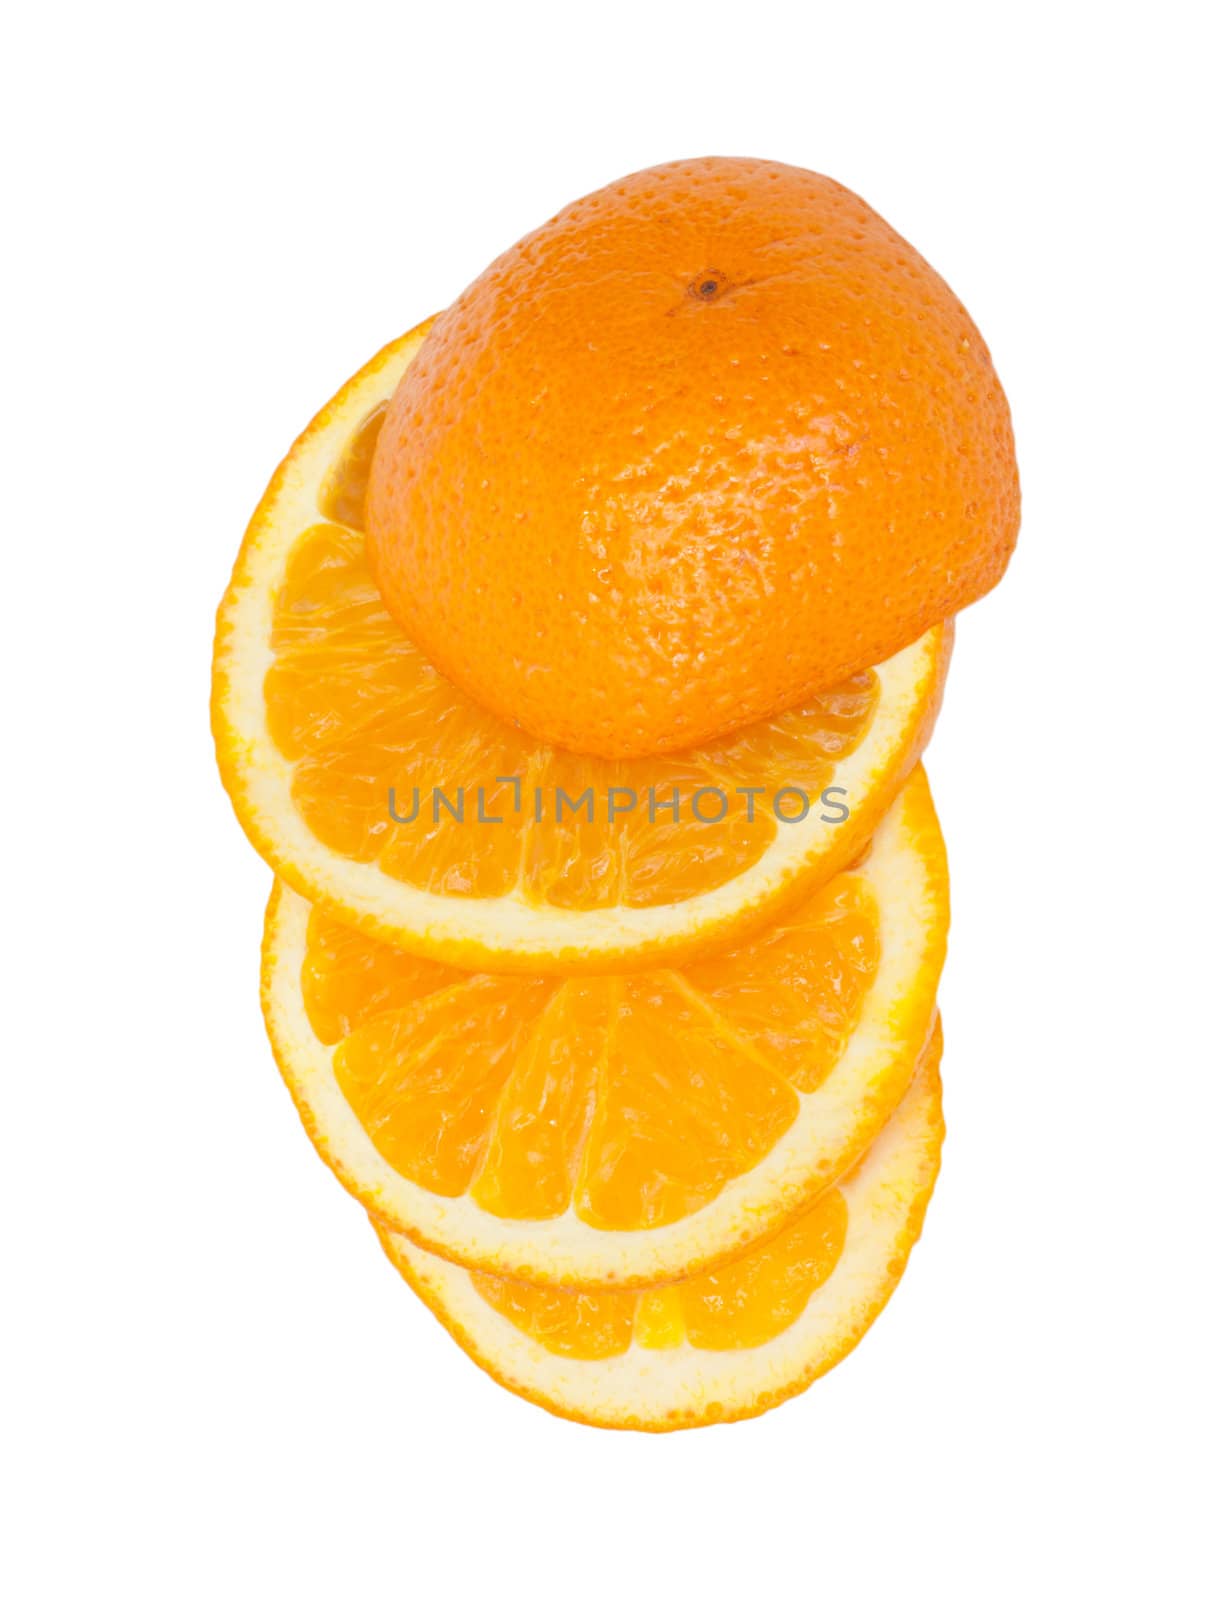 Slice of orange. isolated on white. 